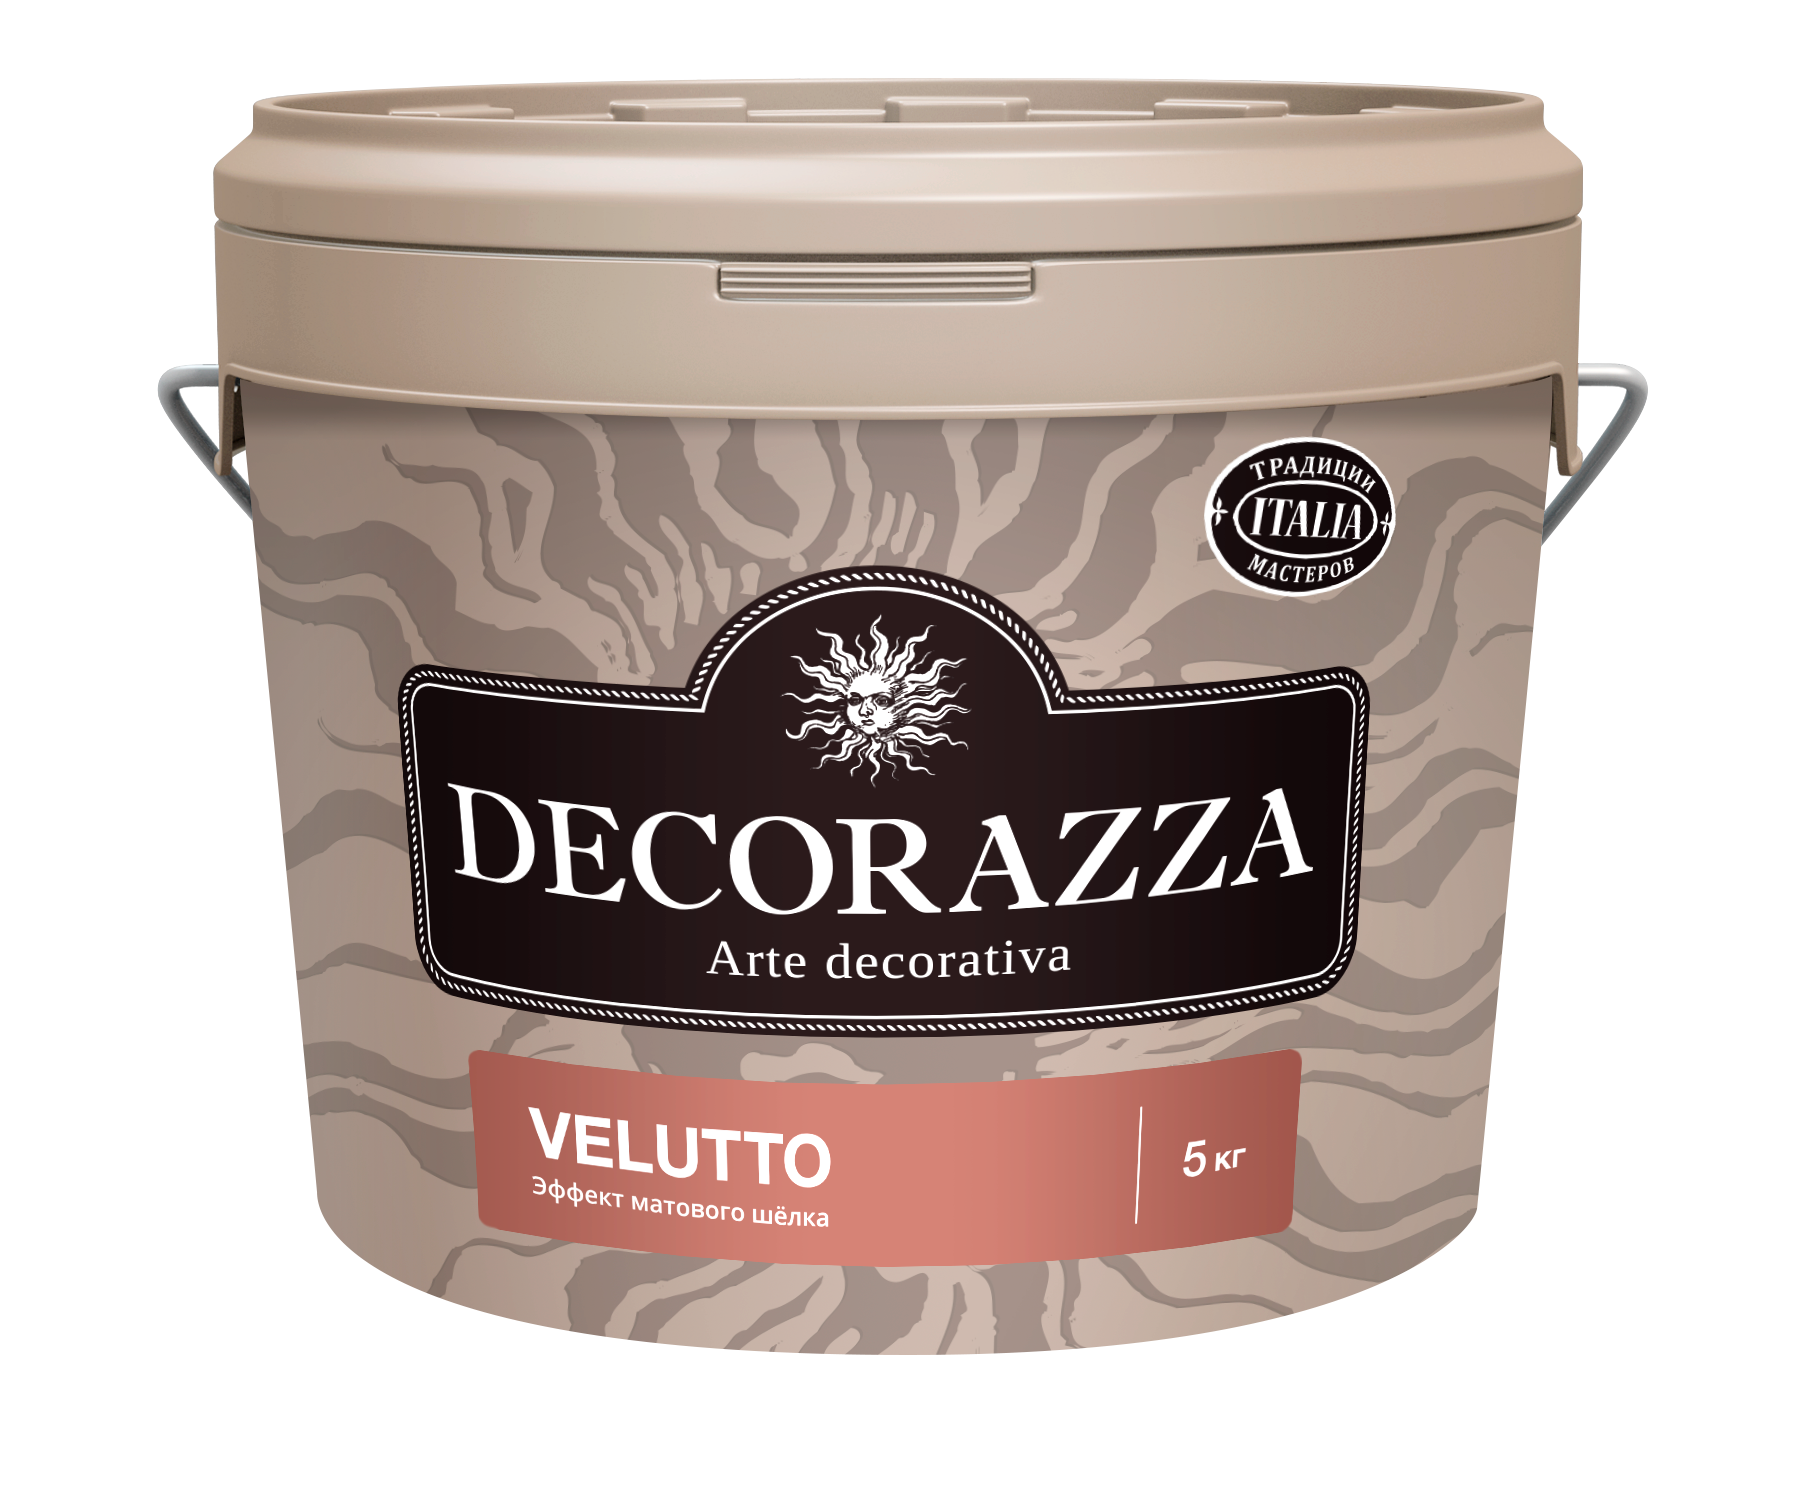 Декоративная штукатурка Decorazza Velluto VT 001, 5 кг декоративная штукатурка эффект натурального шелка decorazza seta st 800 золото 1 кг